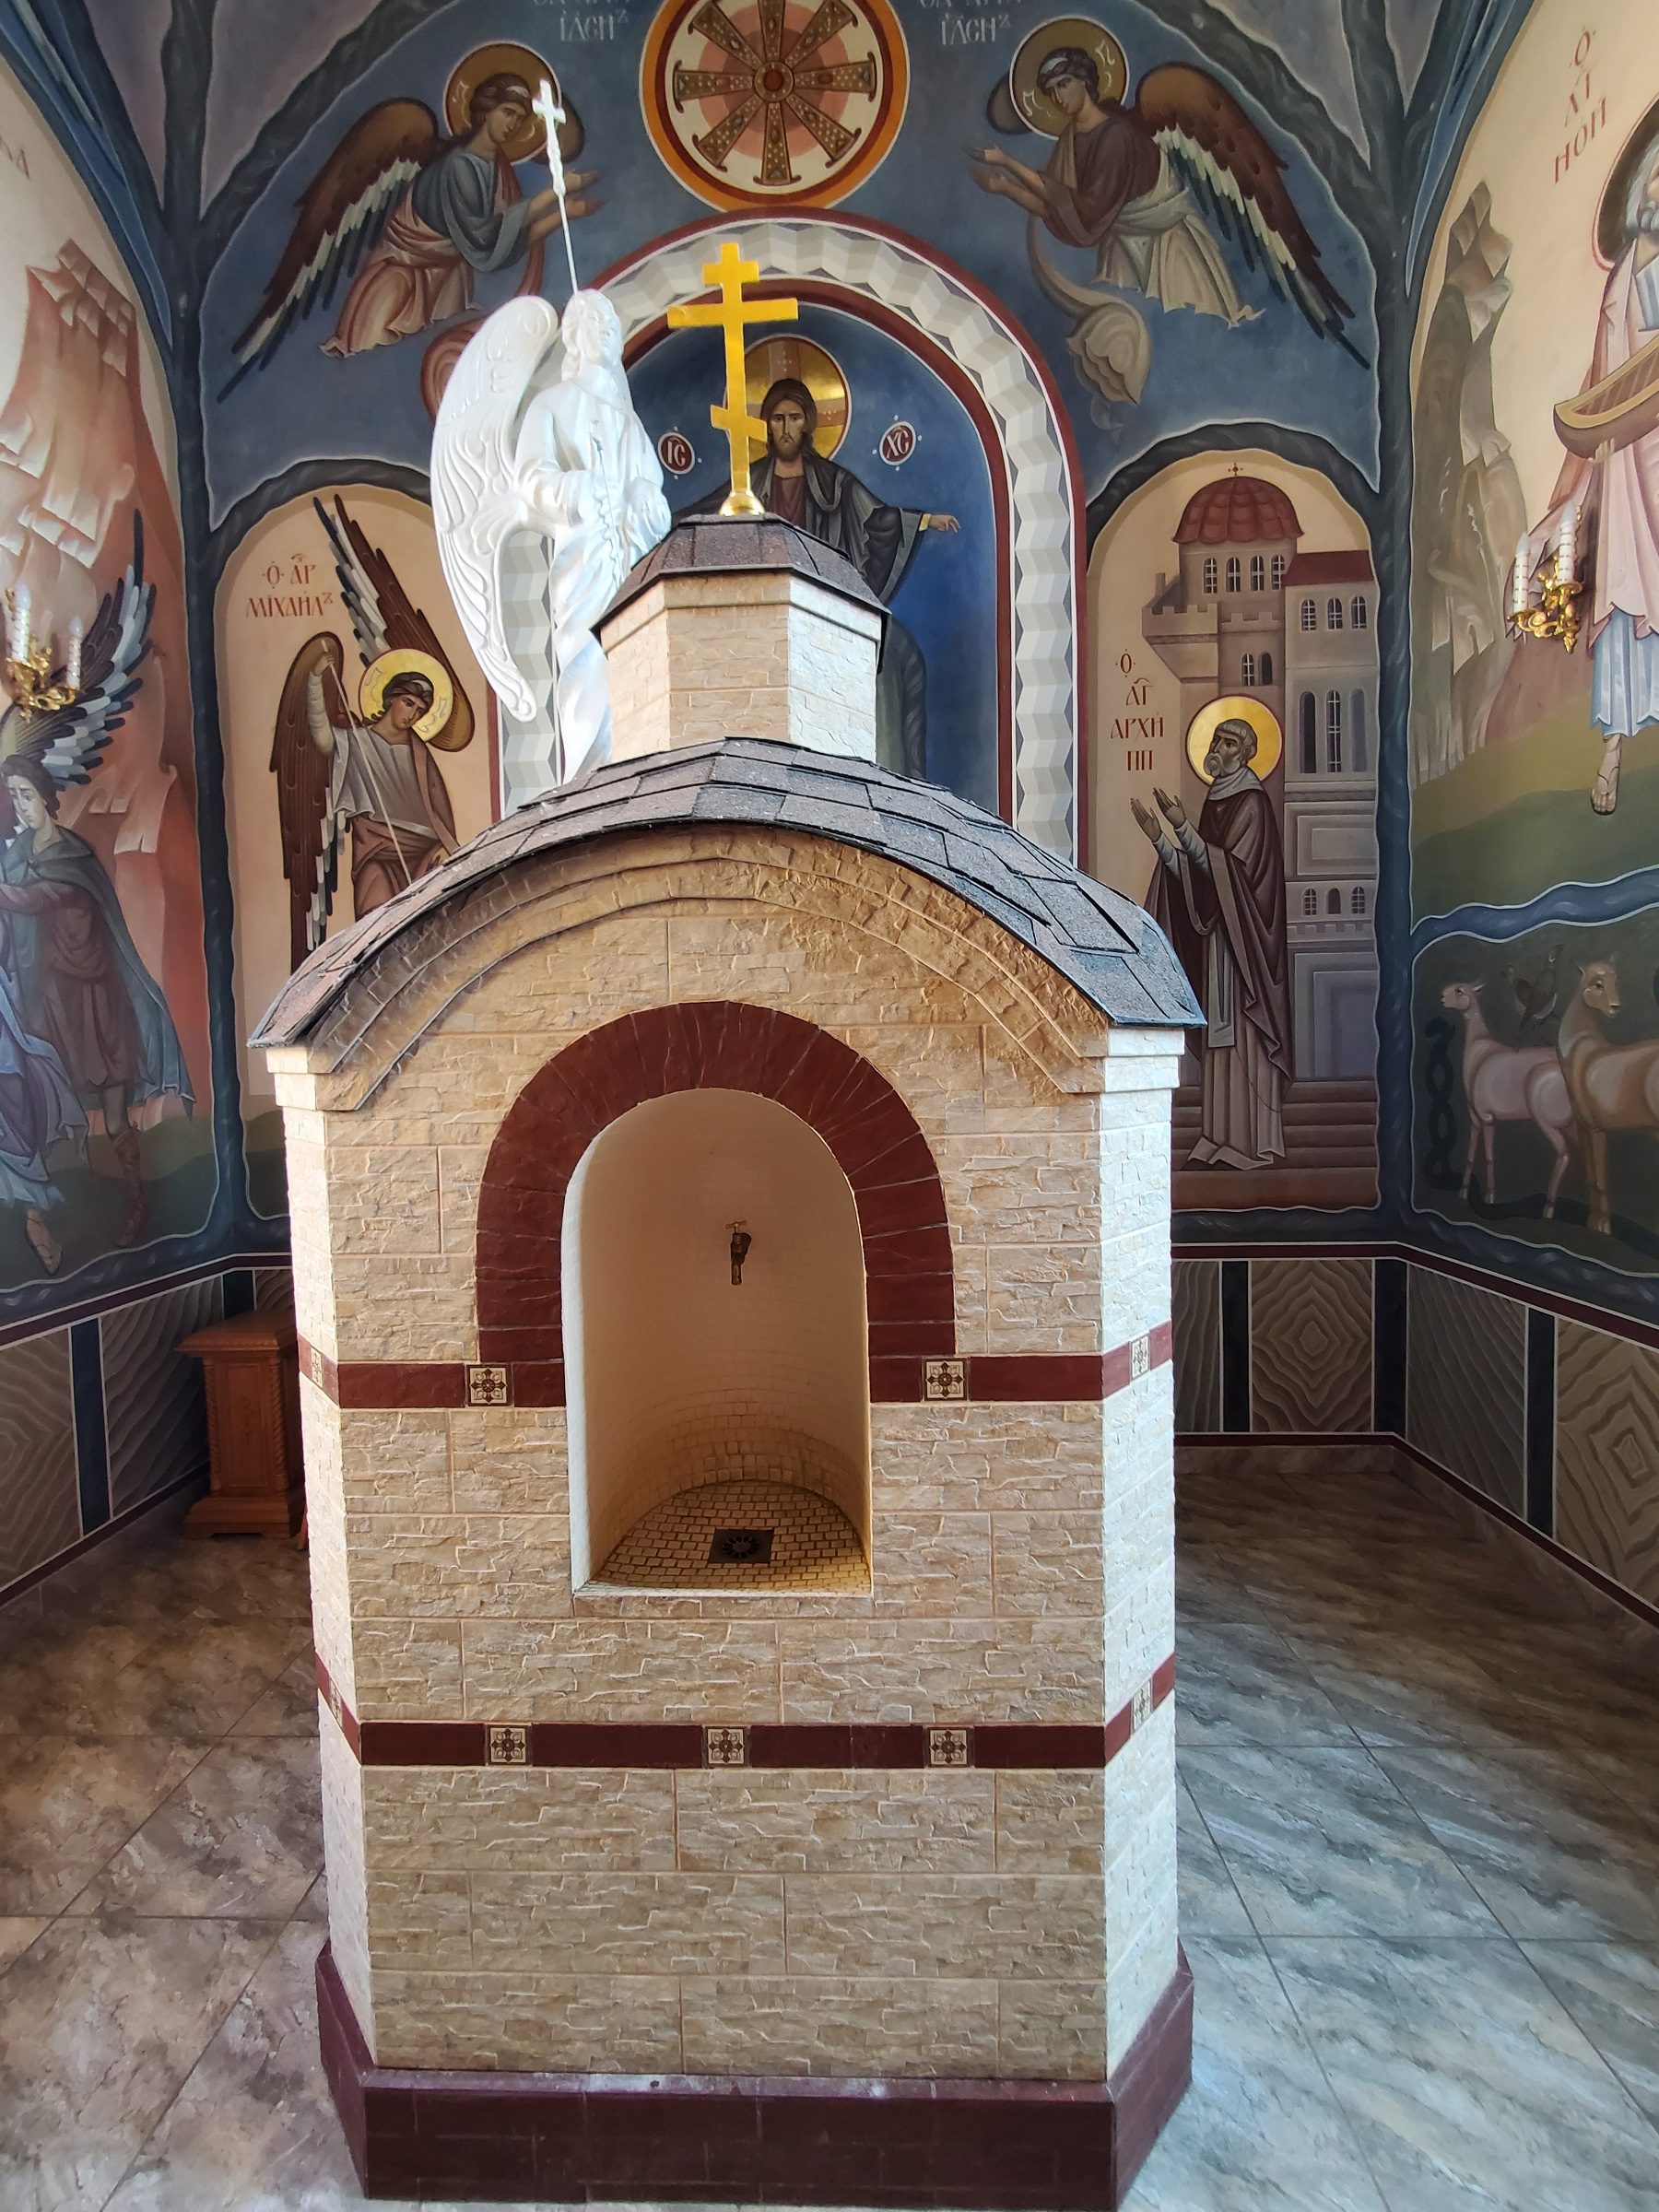 20211030 135641 rotated - Свято-Покровский монастырь в Толочине